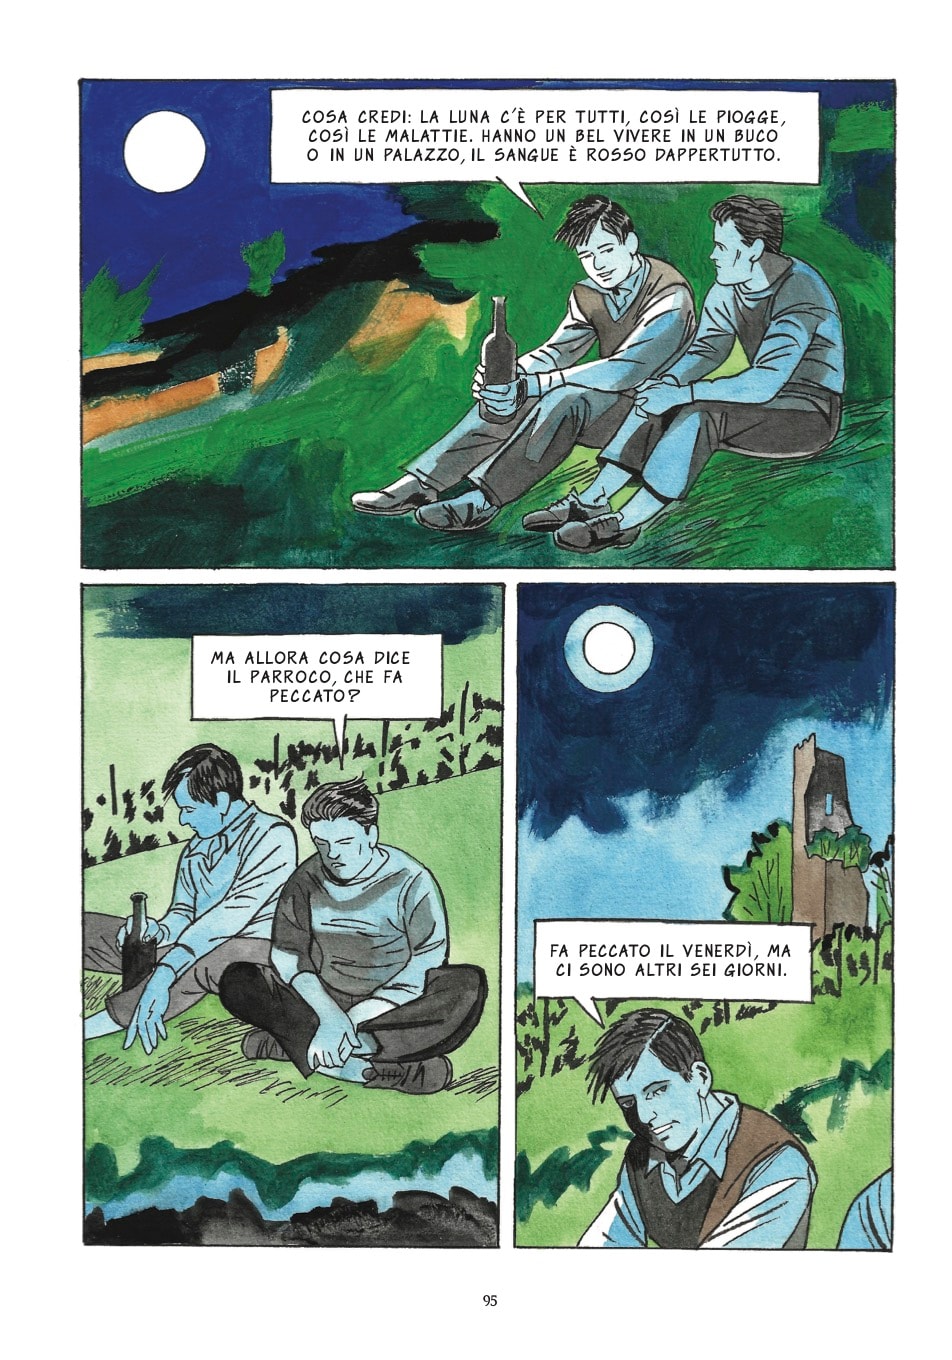 "La luna e i falò" di Cesare Pavese, adattamento a fumetti di Marino Magliani e Marco D’Aponte (Tunué)